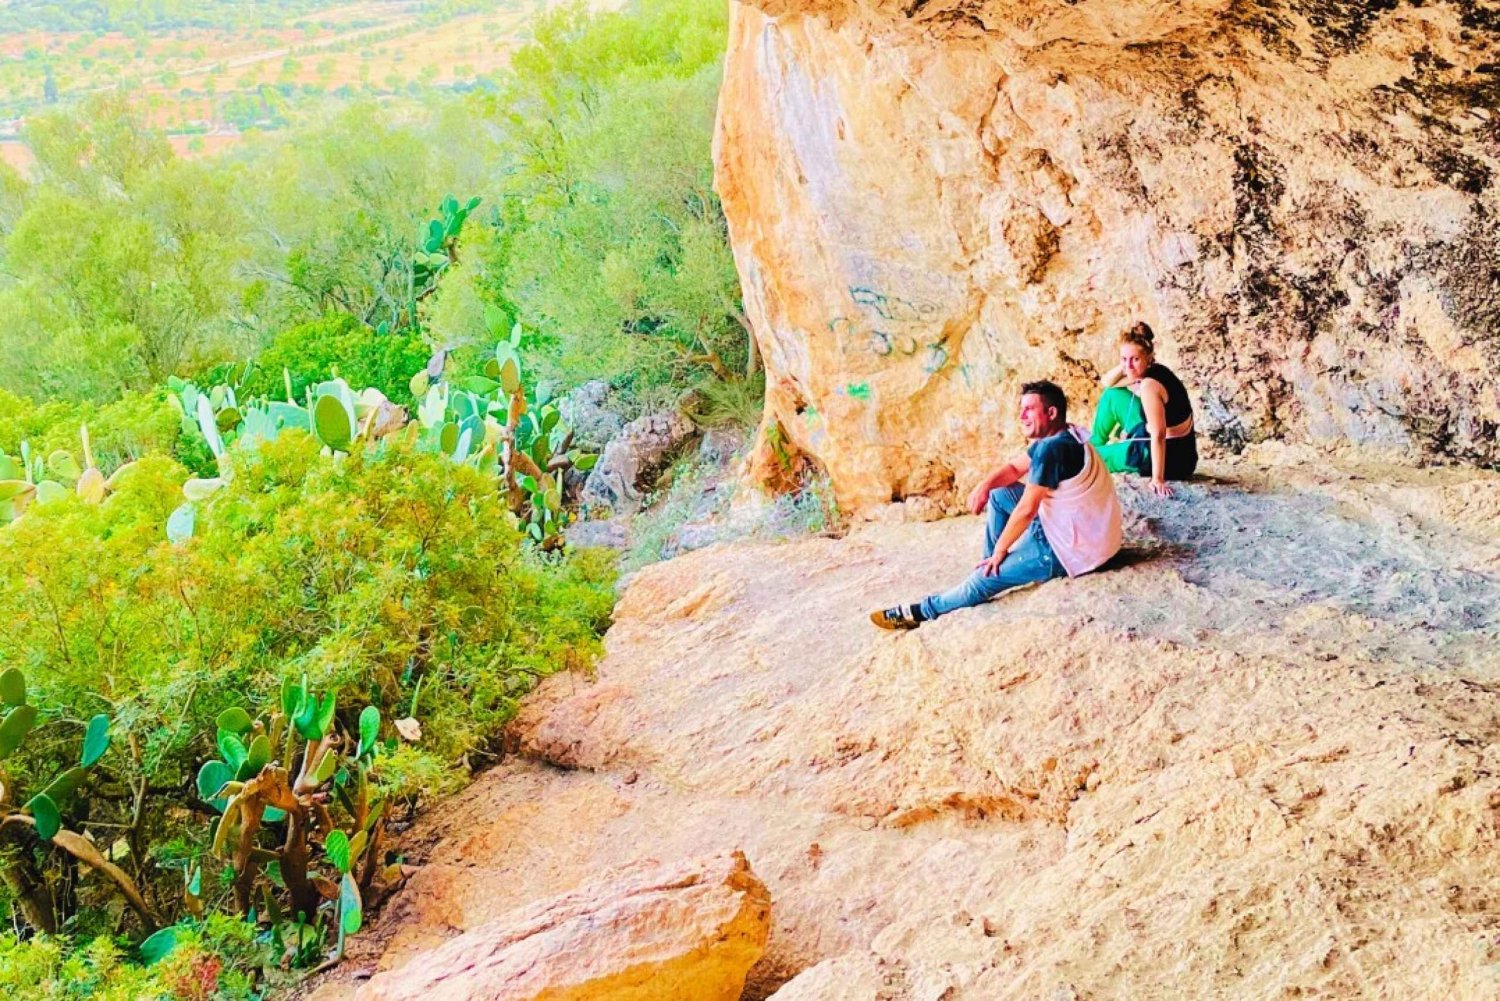 Cala Millor: 'Cavemen', grotta på ett berg, roligt spel och vandring